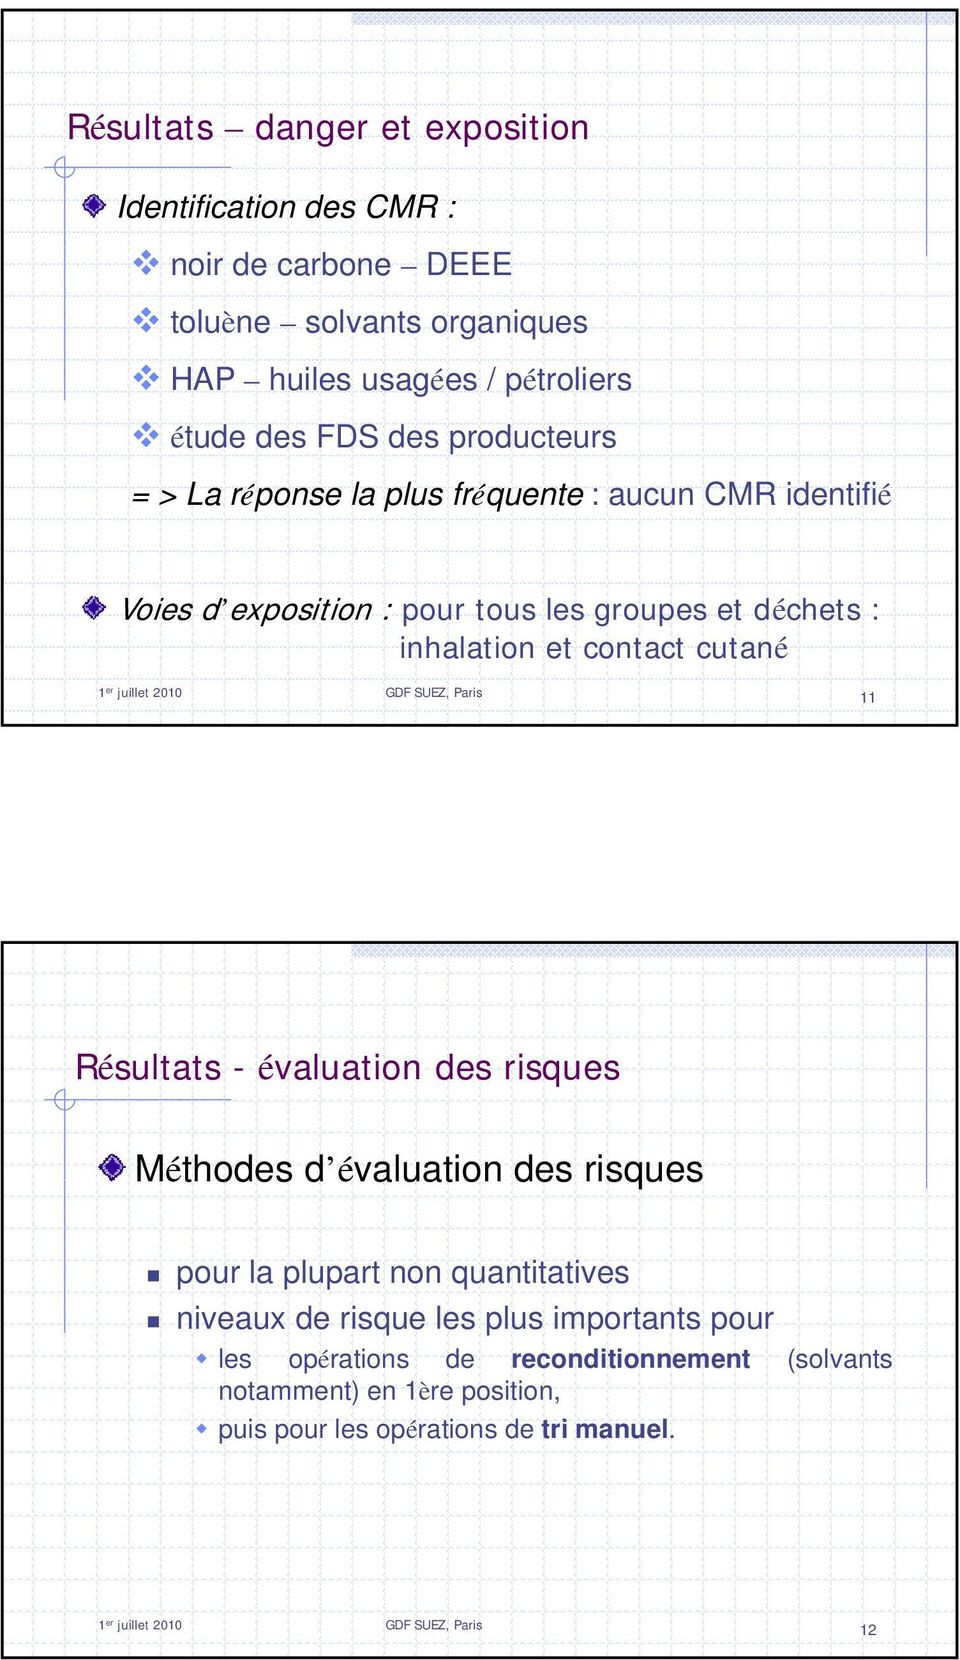 juillet 2010 GDF SUEZ, Paris 11 Résultats - évaluation des risques Méthodes d évaluation des risques pour la plupart non quantitatives niveaux de risque les plus